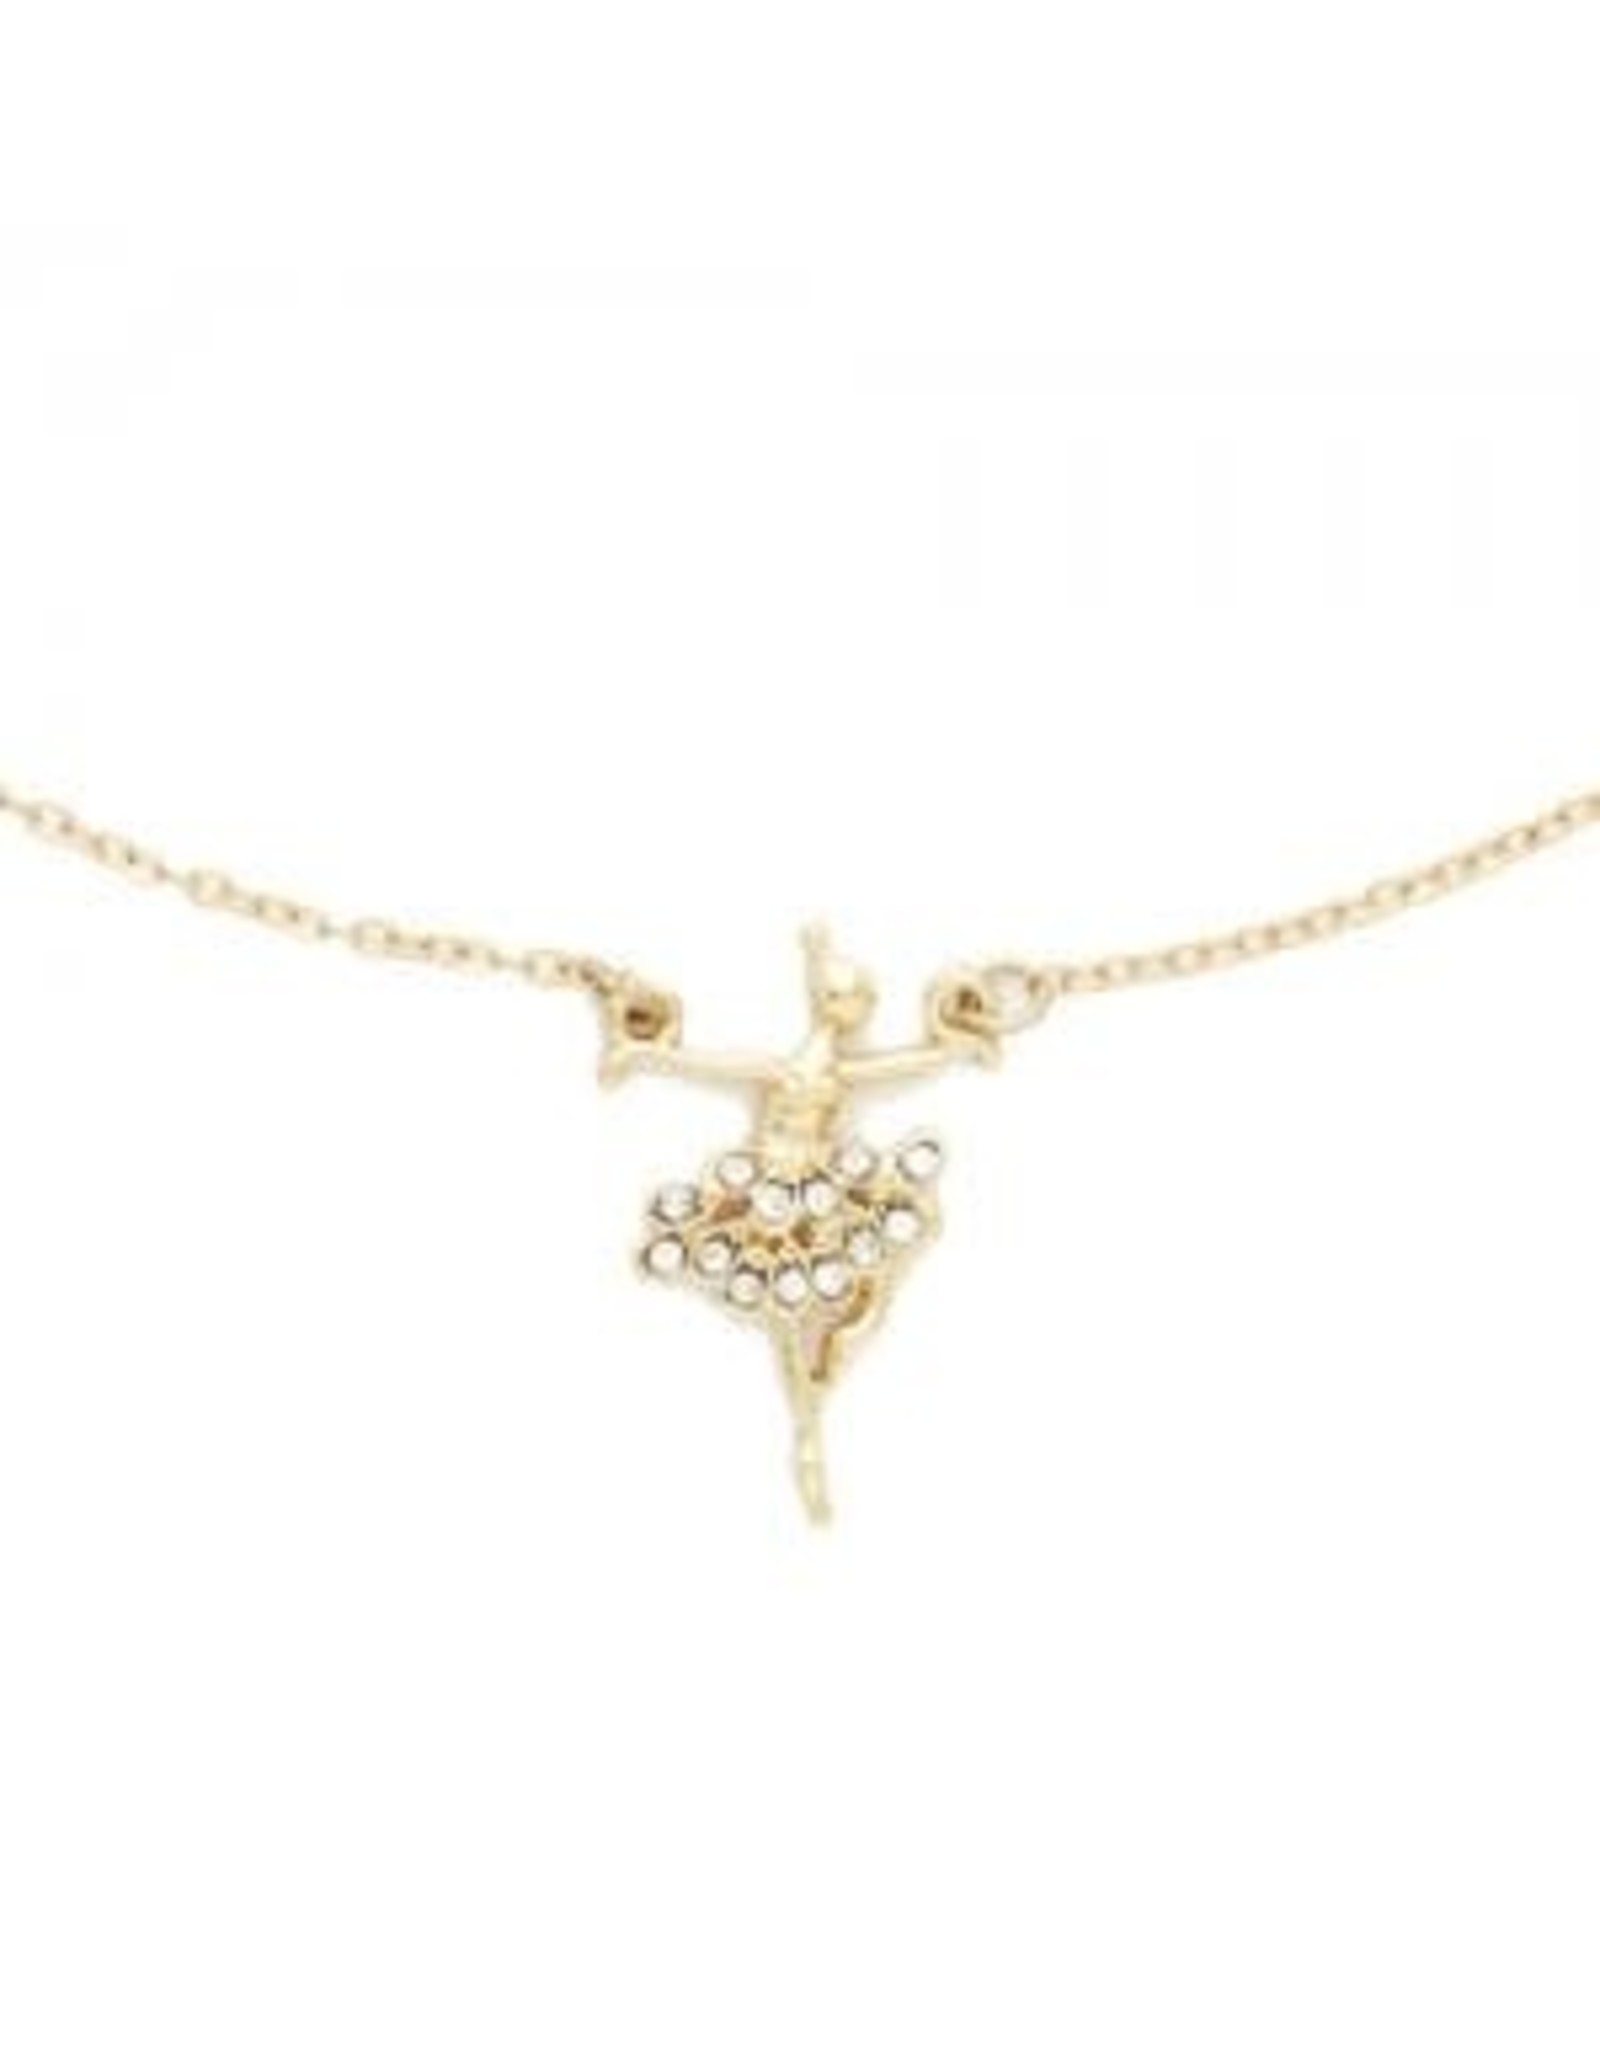 Dasha Gold Ballerina Necklace